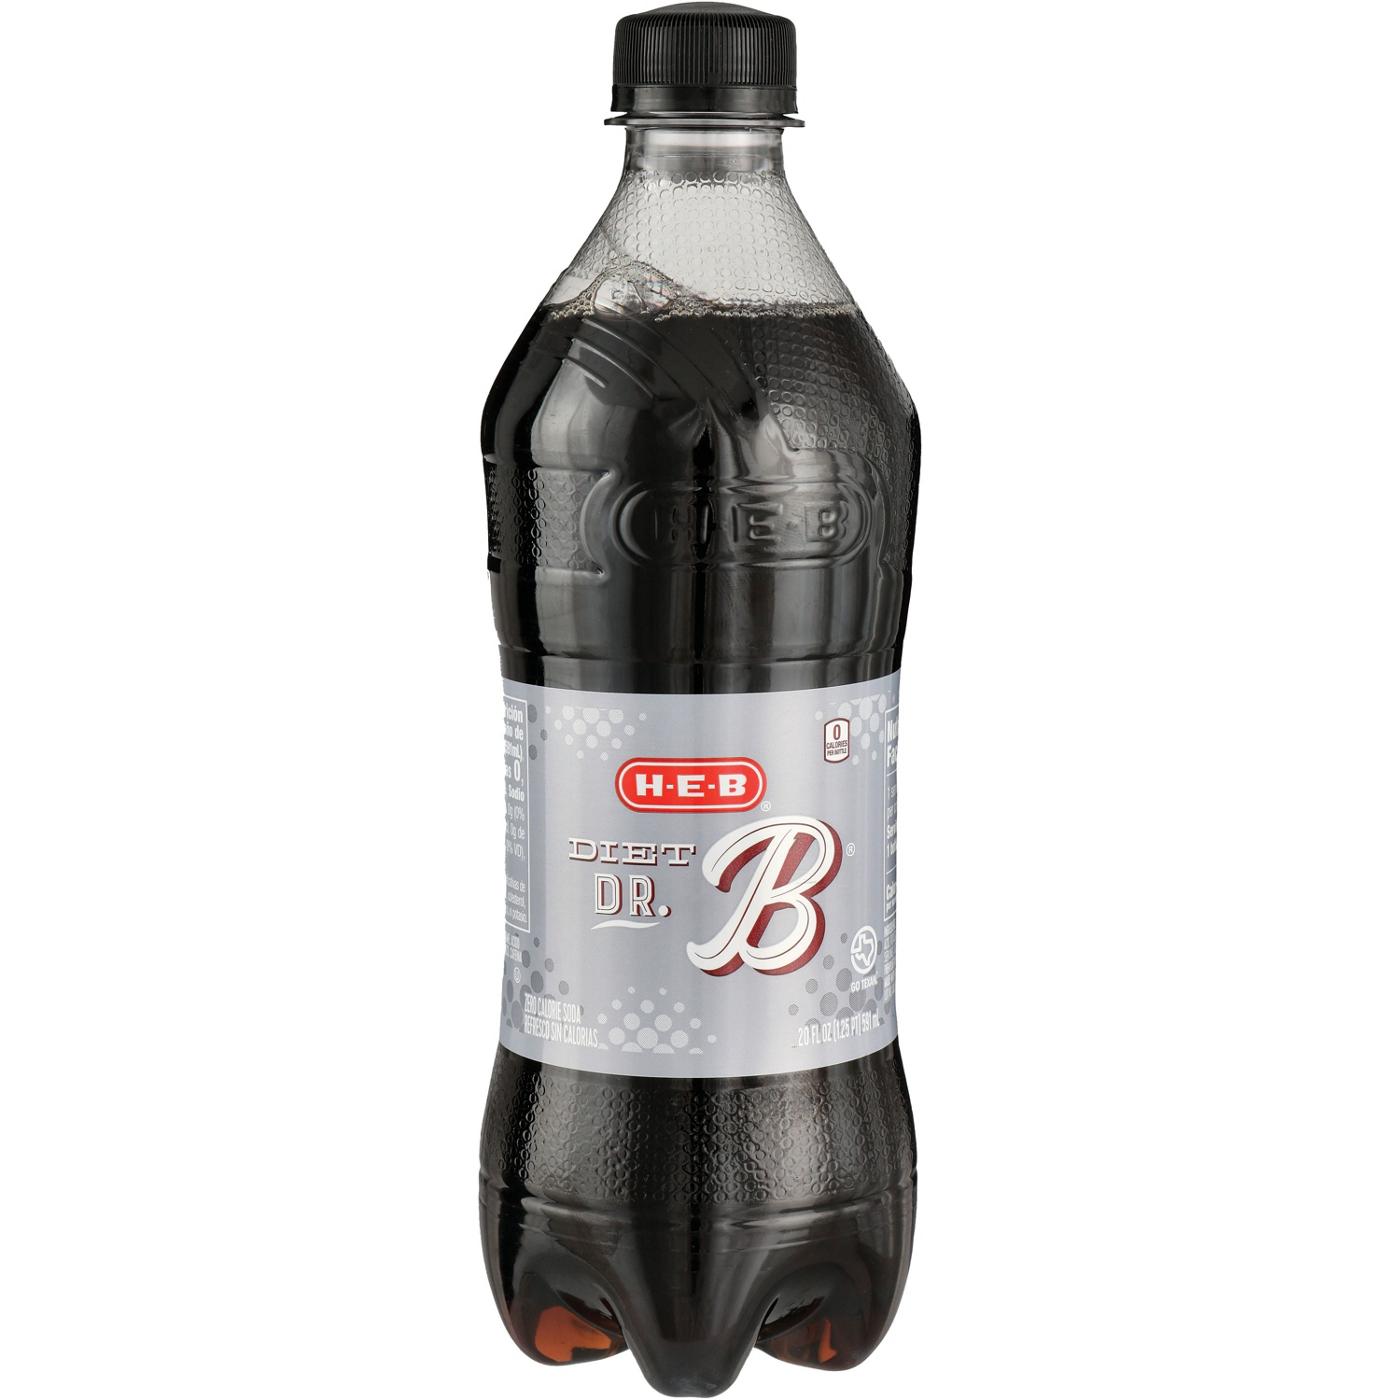 H-E-B Diet Dr. B Soda; image 2 of 2